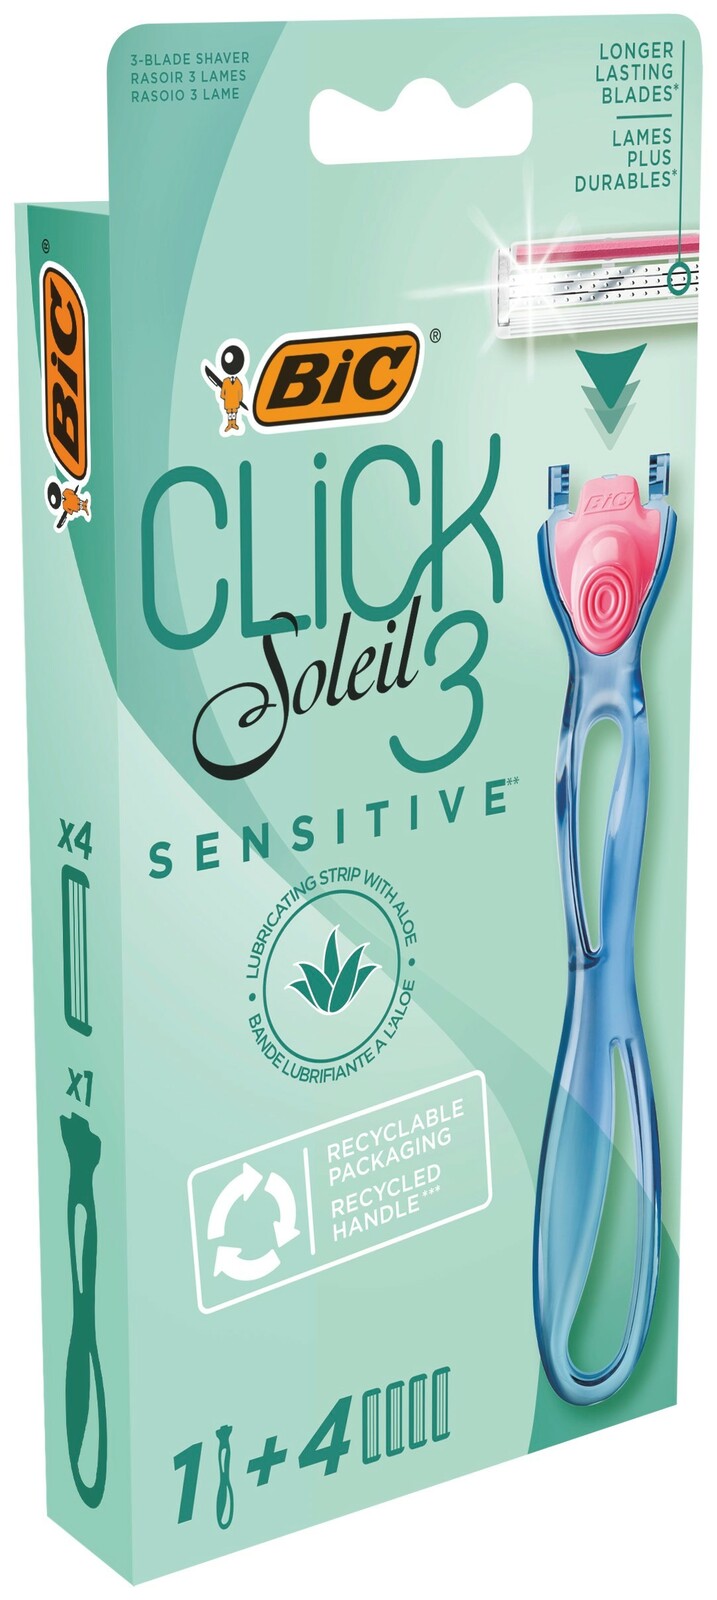 Bic Click Soleil 3 Sensitive Scheermes Set